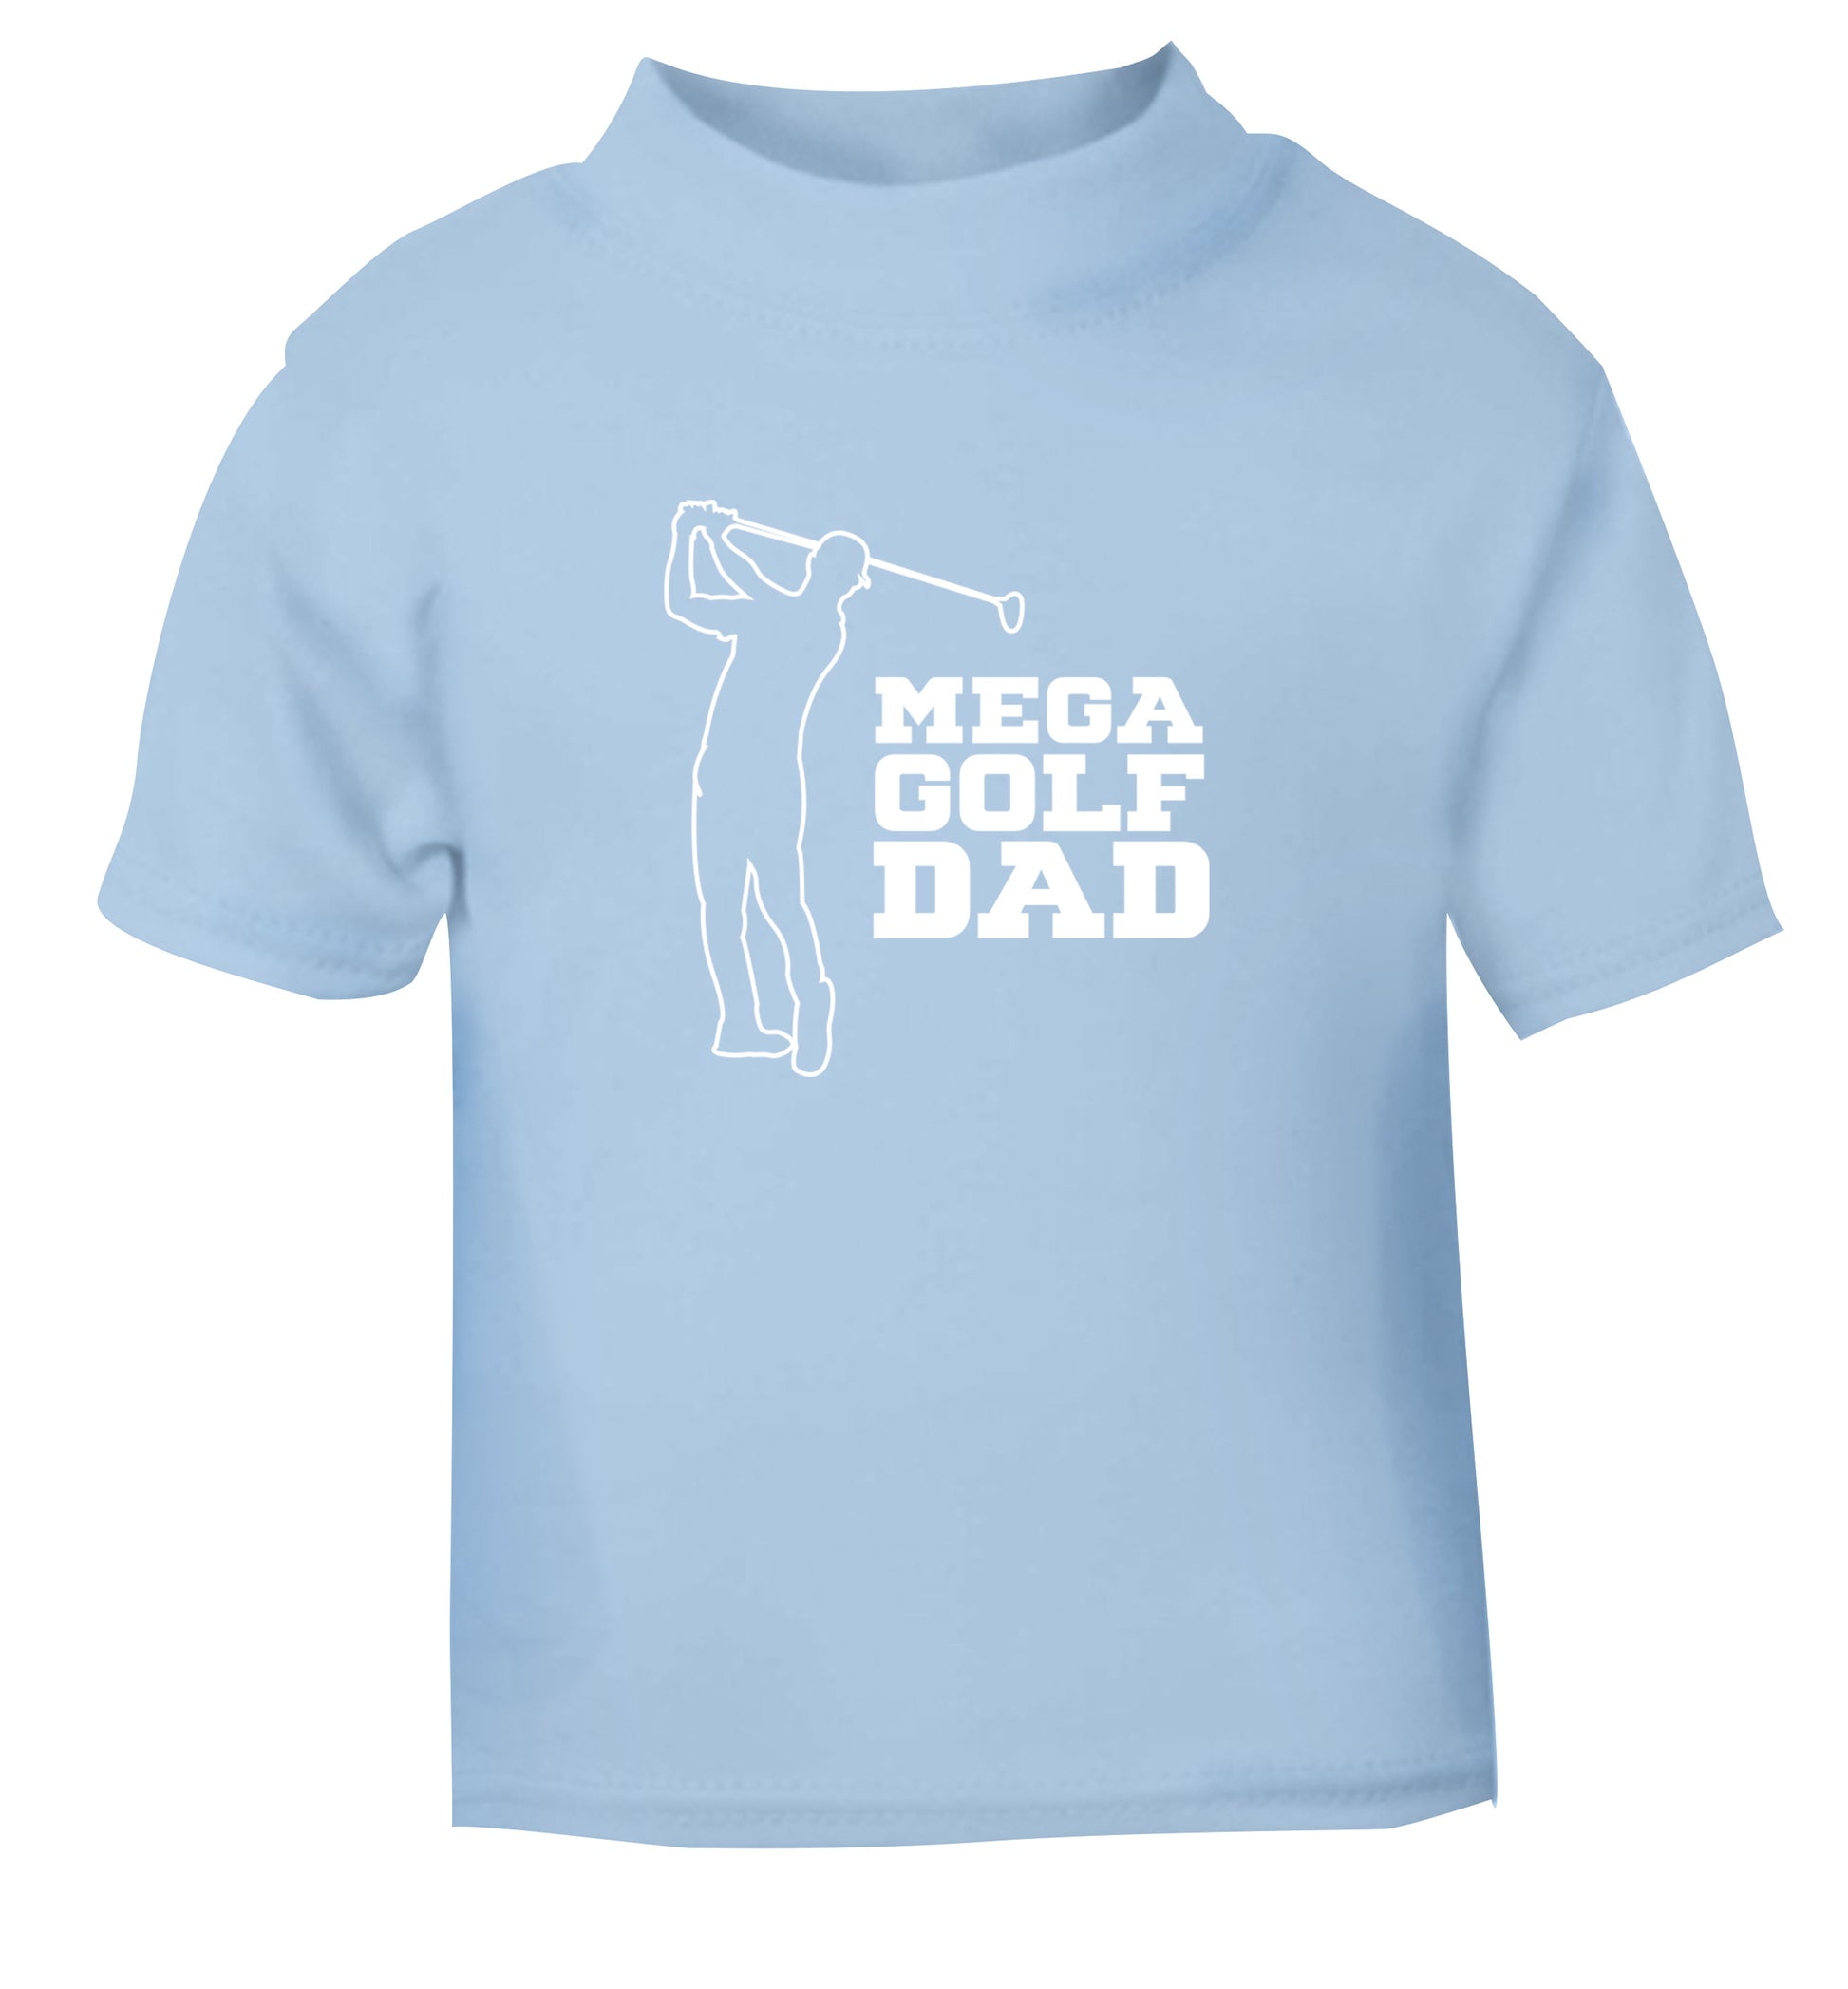 Mega golfing dad light blue Baby Toddler Tshirt 2 Years